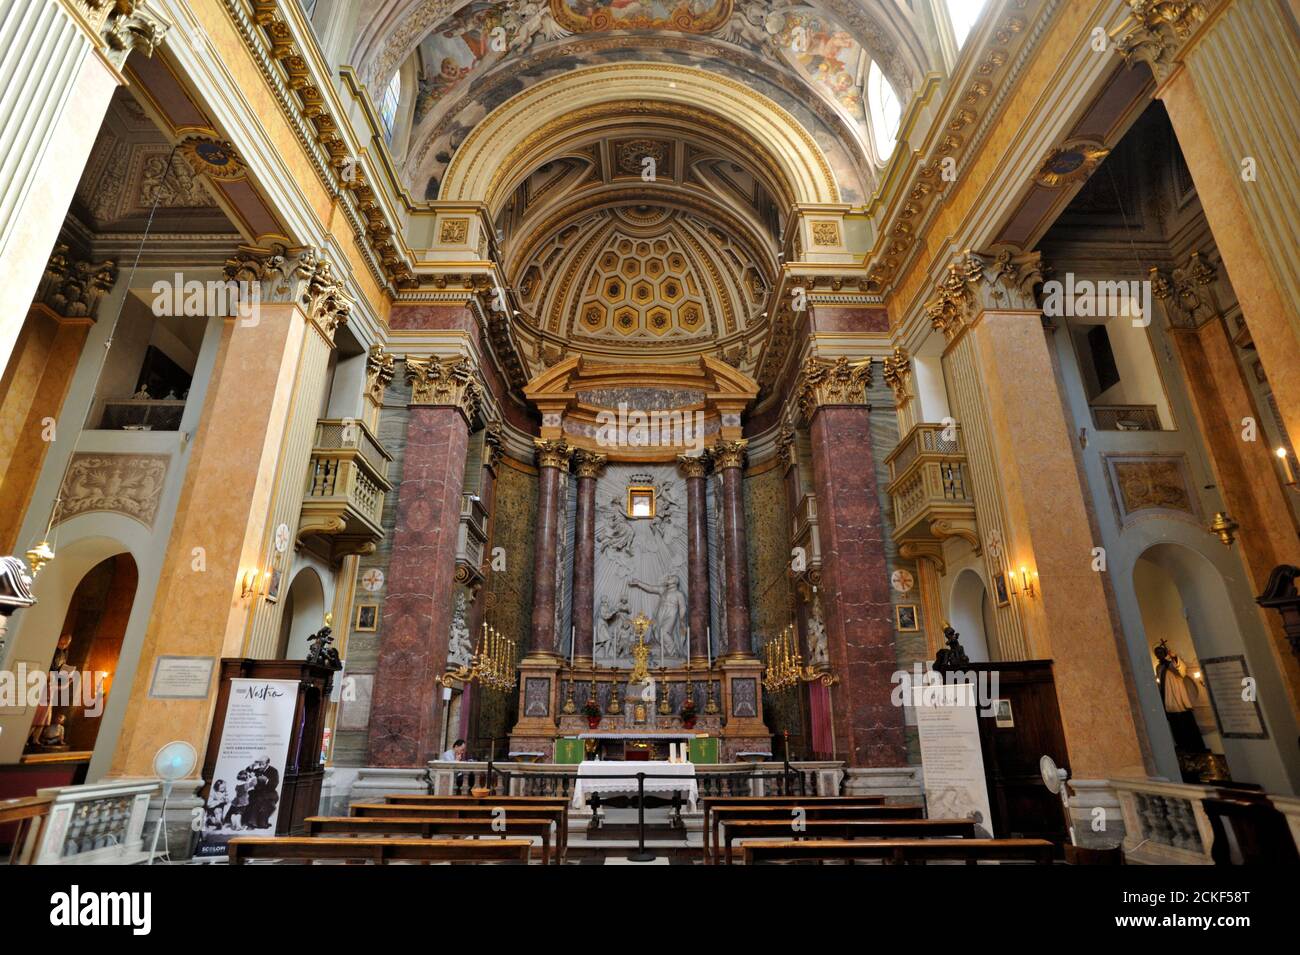 Italie, Rome, église de San Pantaleo intérieur Banque D'Images